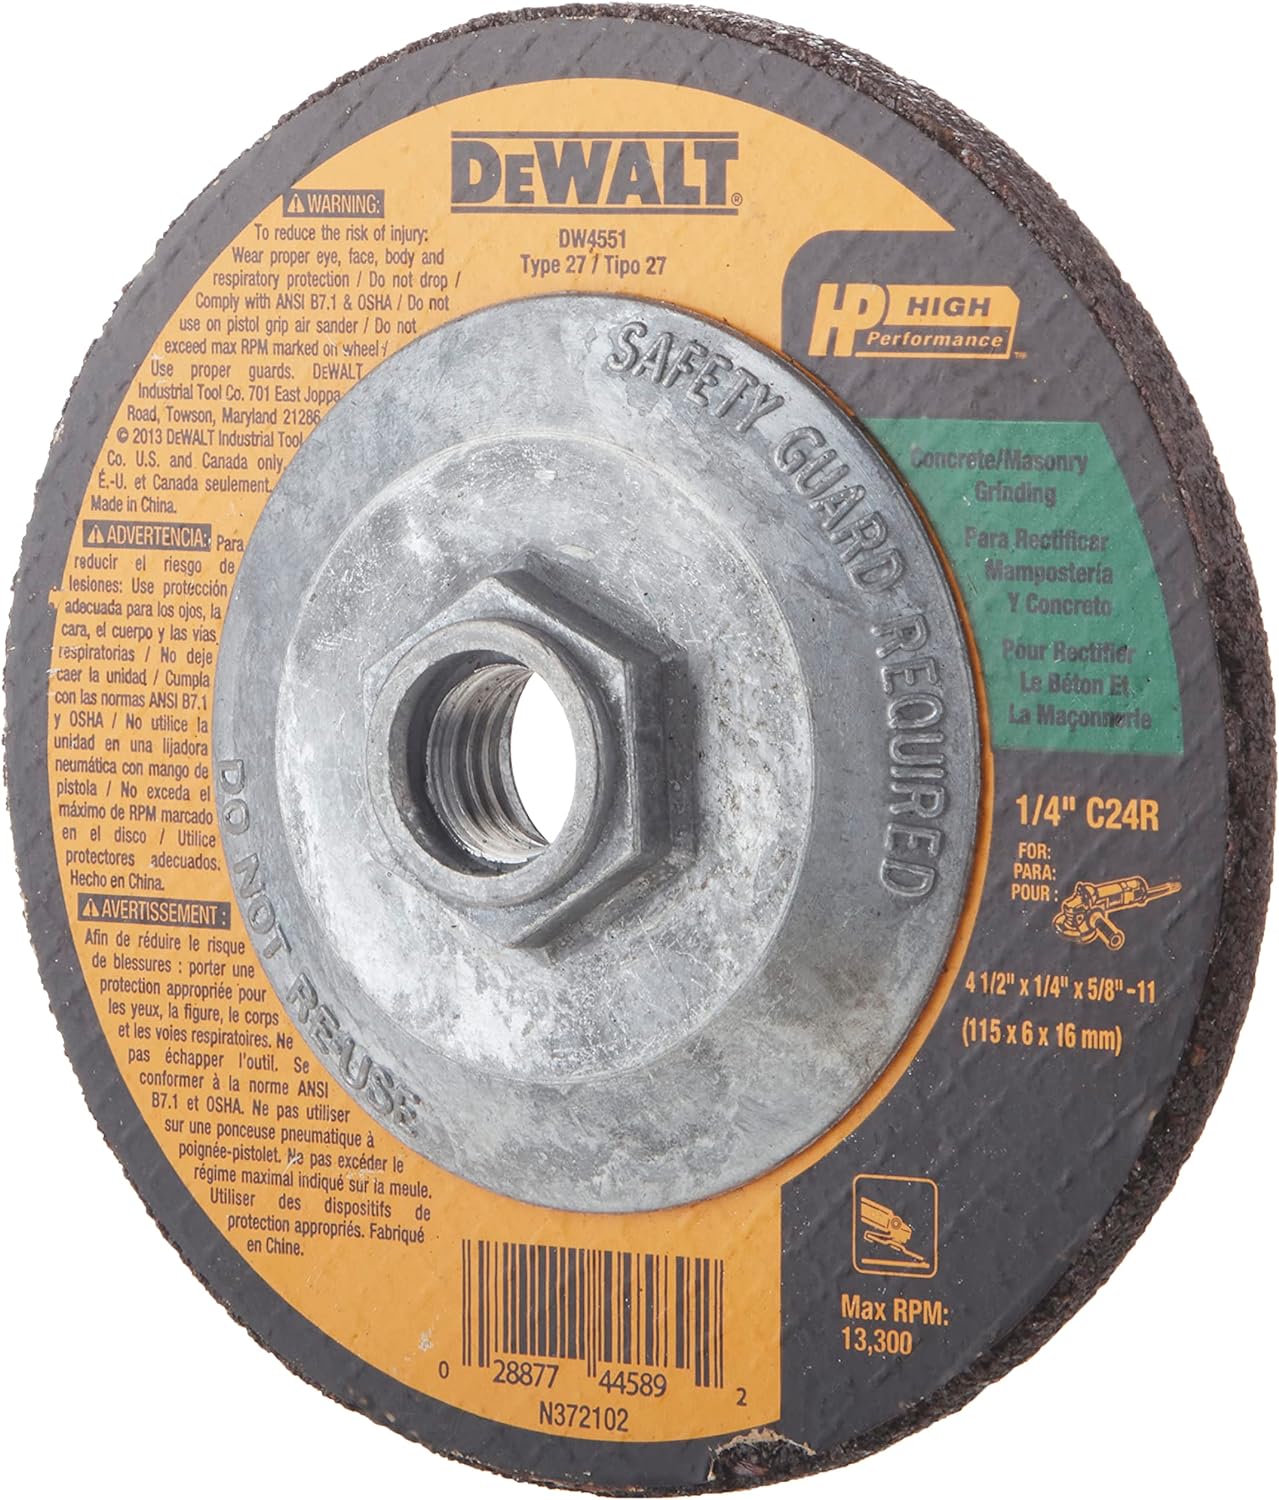 Dewalt DW4551 Type 27 Masonry Grinding Wheel 4.5″ x 1/4″ x 5/8″-11 2